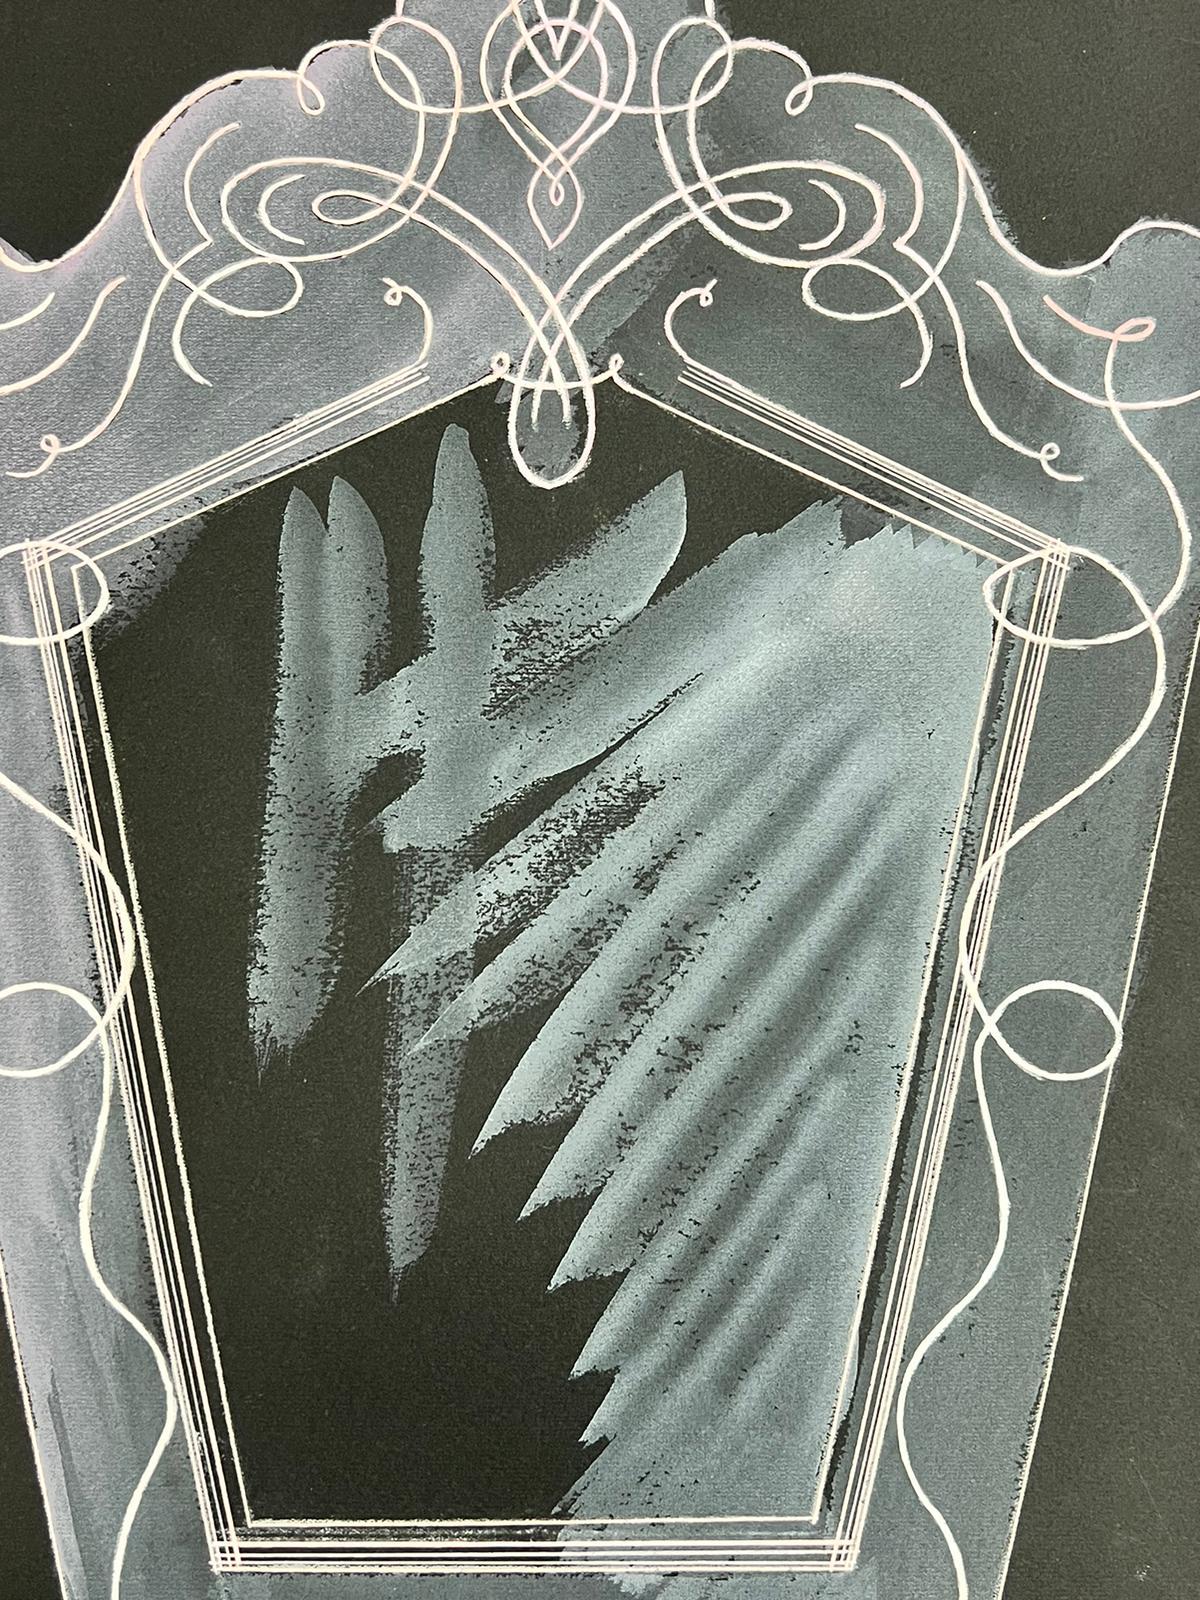 Schwarzer Spiegel
von Josine Vignon (Französisch 1922-2022) 
unterzeichnet
Pastell/Aquarell auf Künstlerpapier, ungerahmt
Gemälde: 20 x 13 Zoll
guter Zustand
Herkunft: aus dem Nachlass des Künstlers, Frankreich

Josine Vignon (1922-2022) war eine